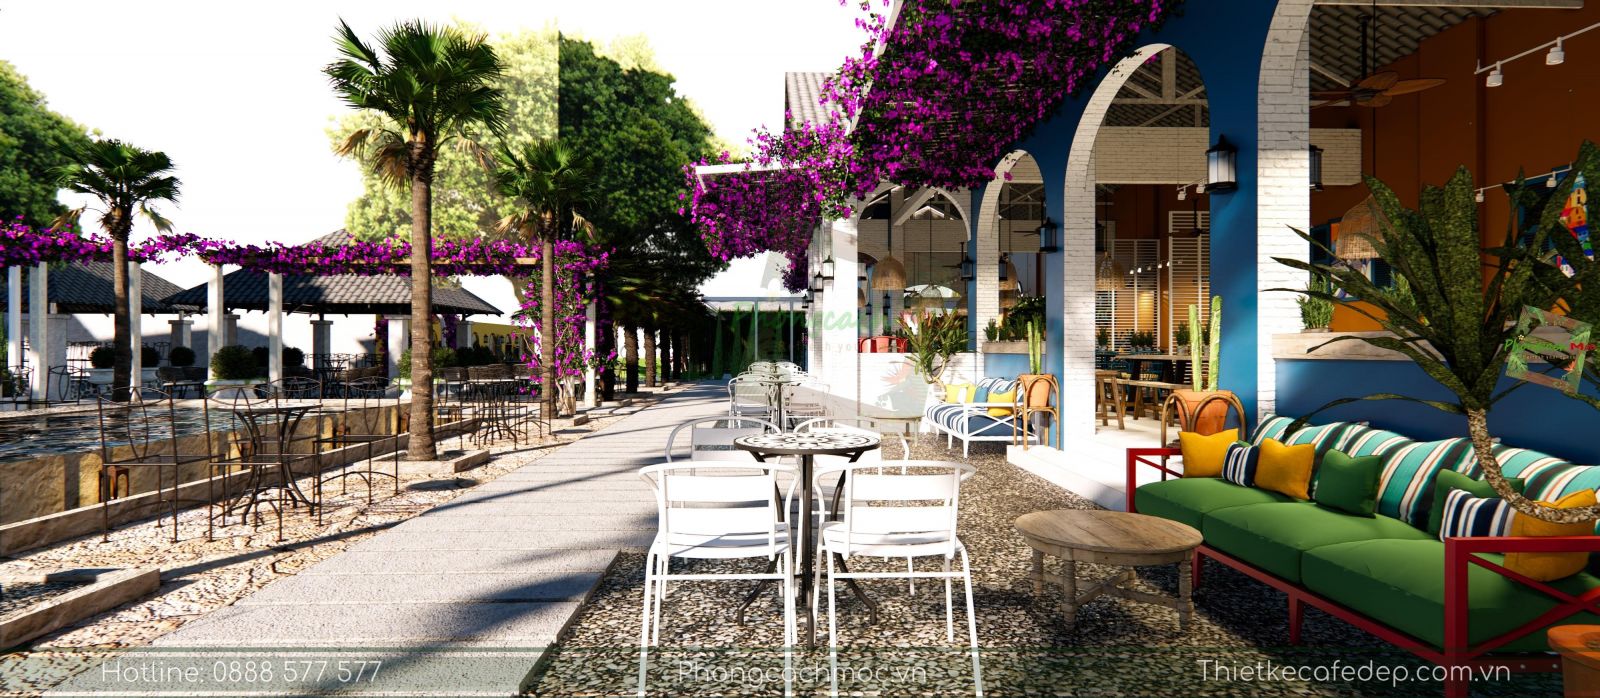 Thiết kế quán cafe phong cách Địa Trung Hải | Victoria Coffee ...